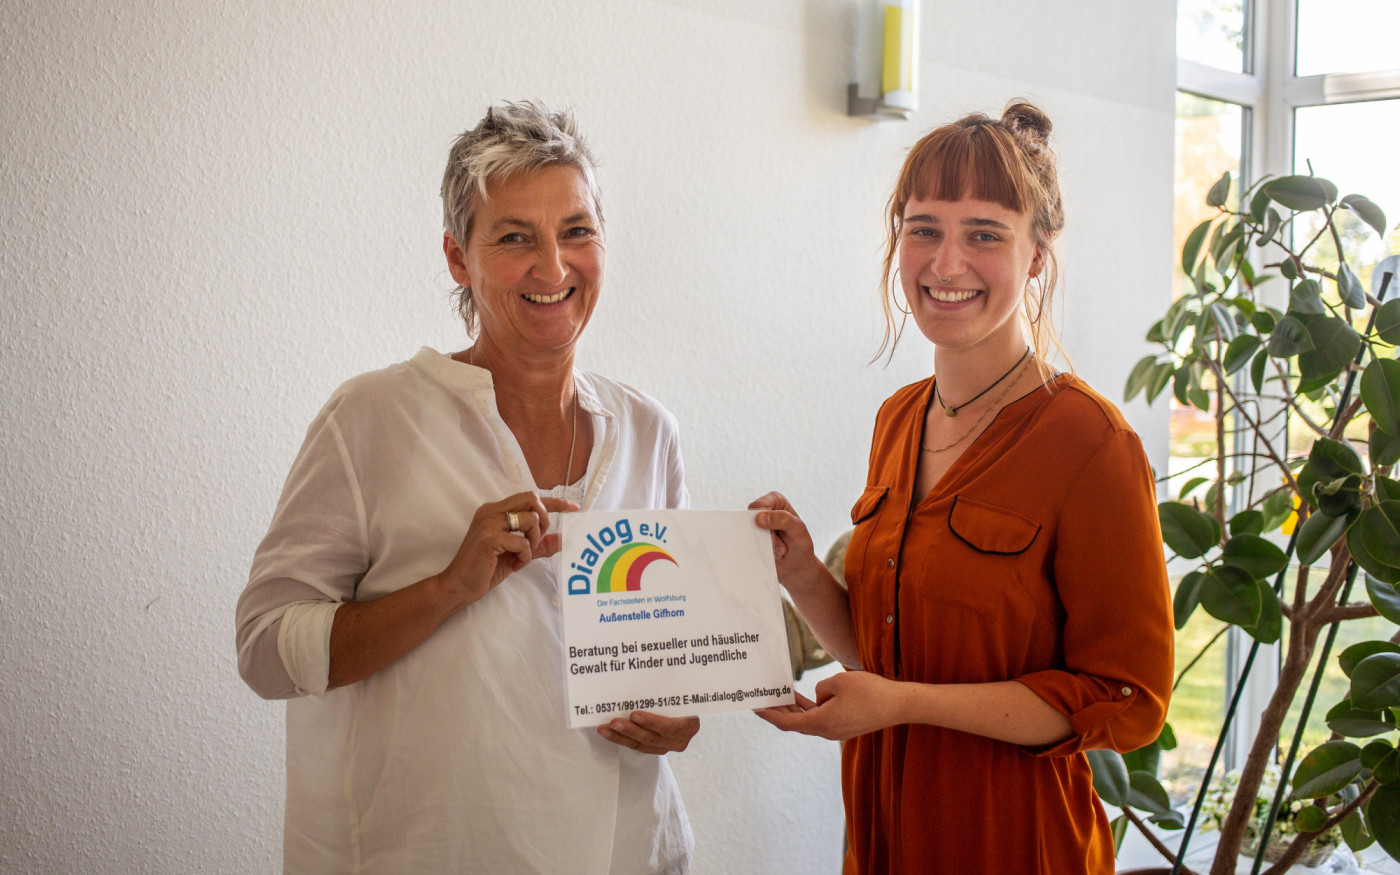 Häusliche und sexualisierte Gewalt - Neue Beratungsstelle für Kinder und Jugendliche in Gifhorn